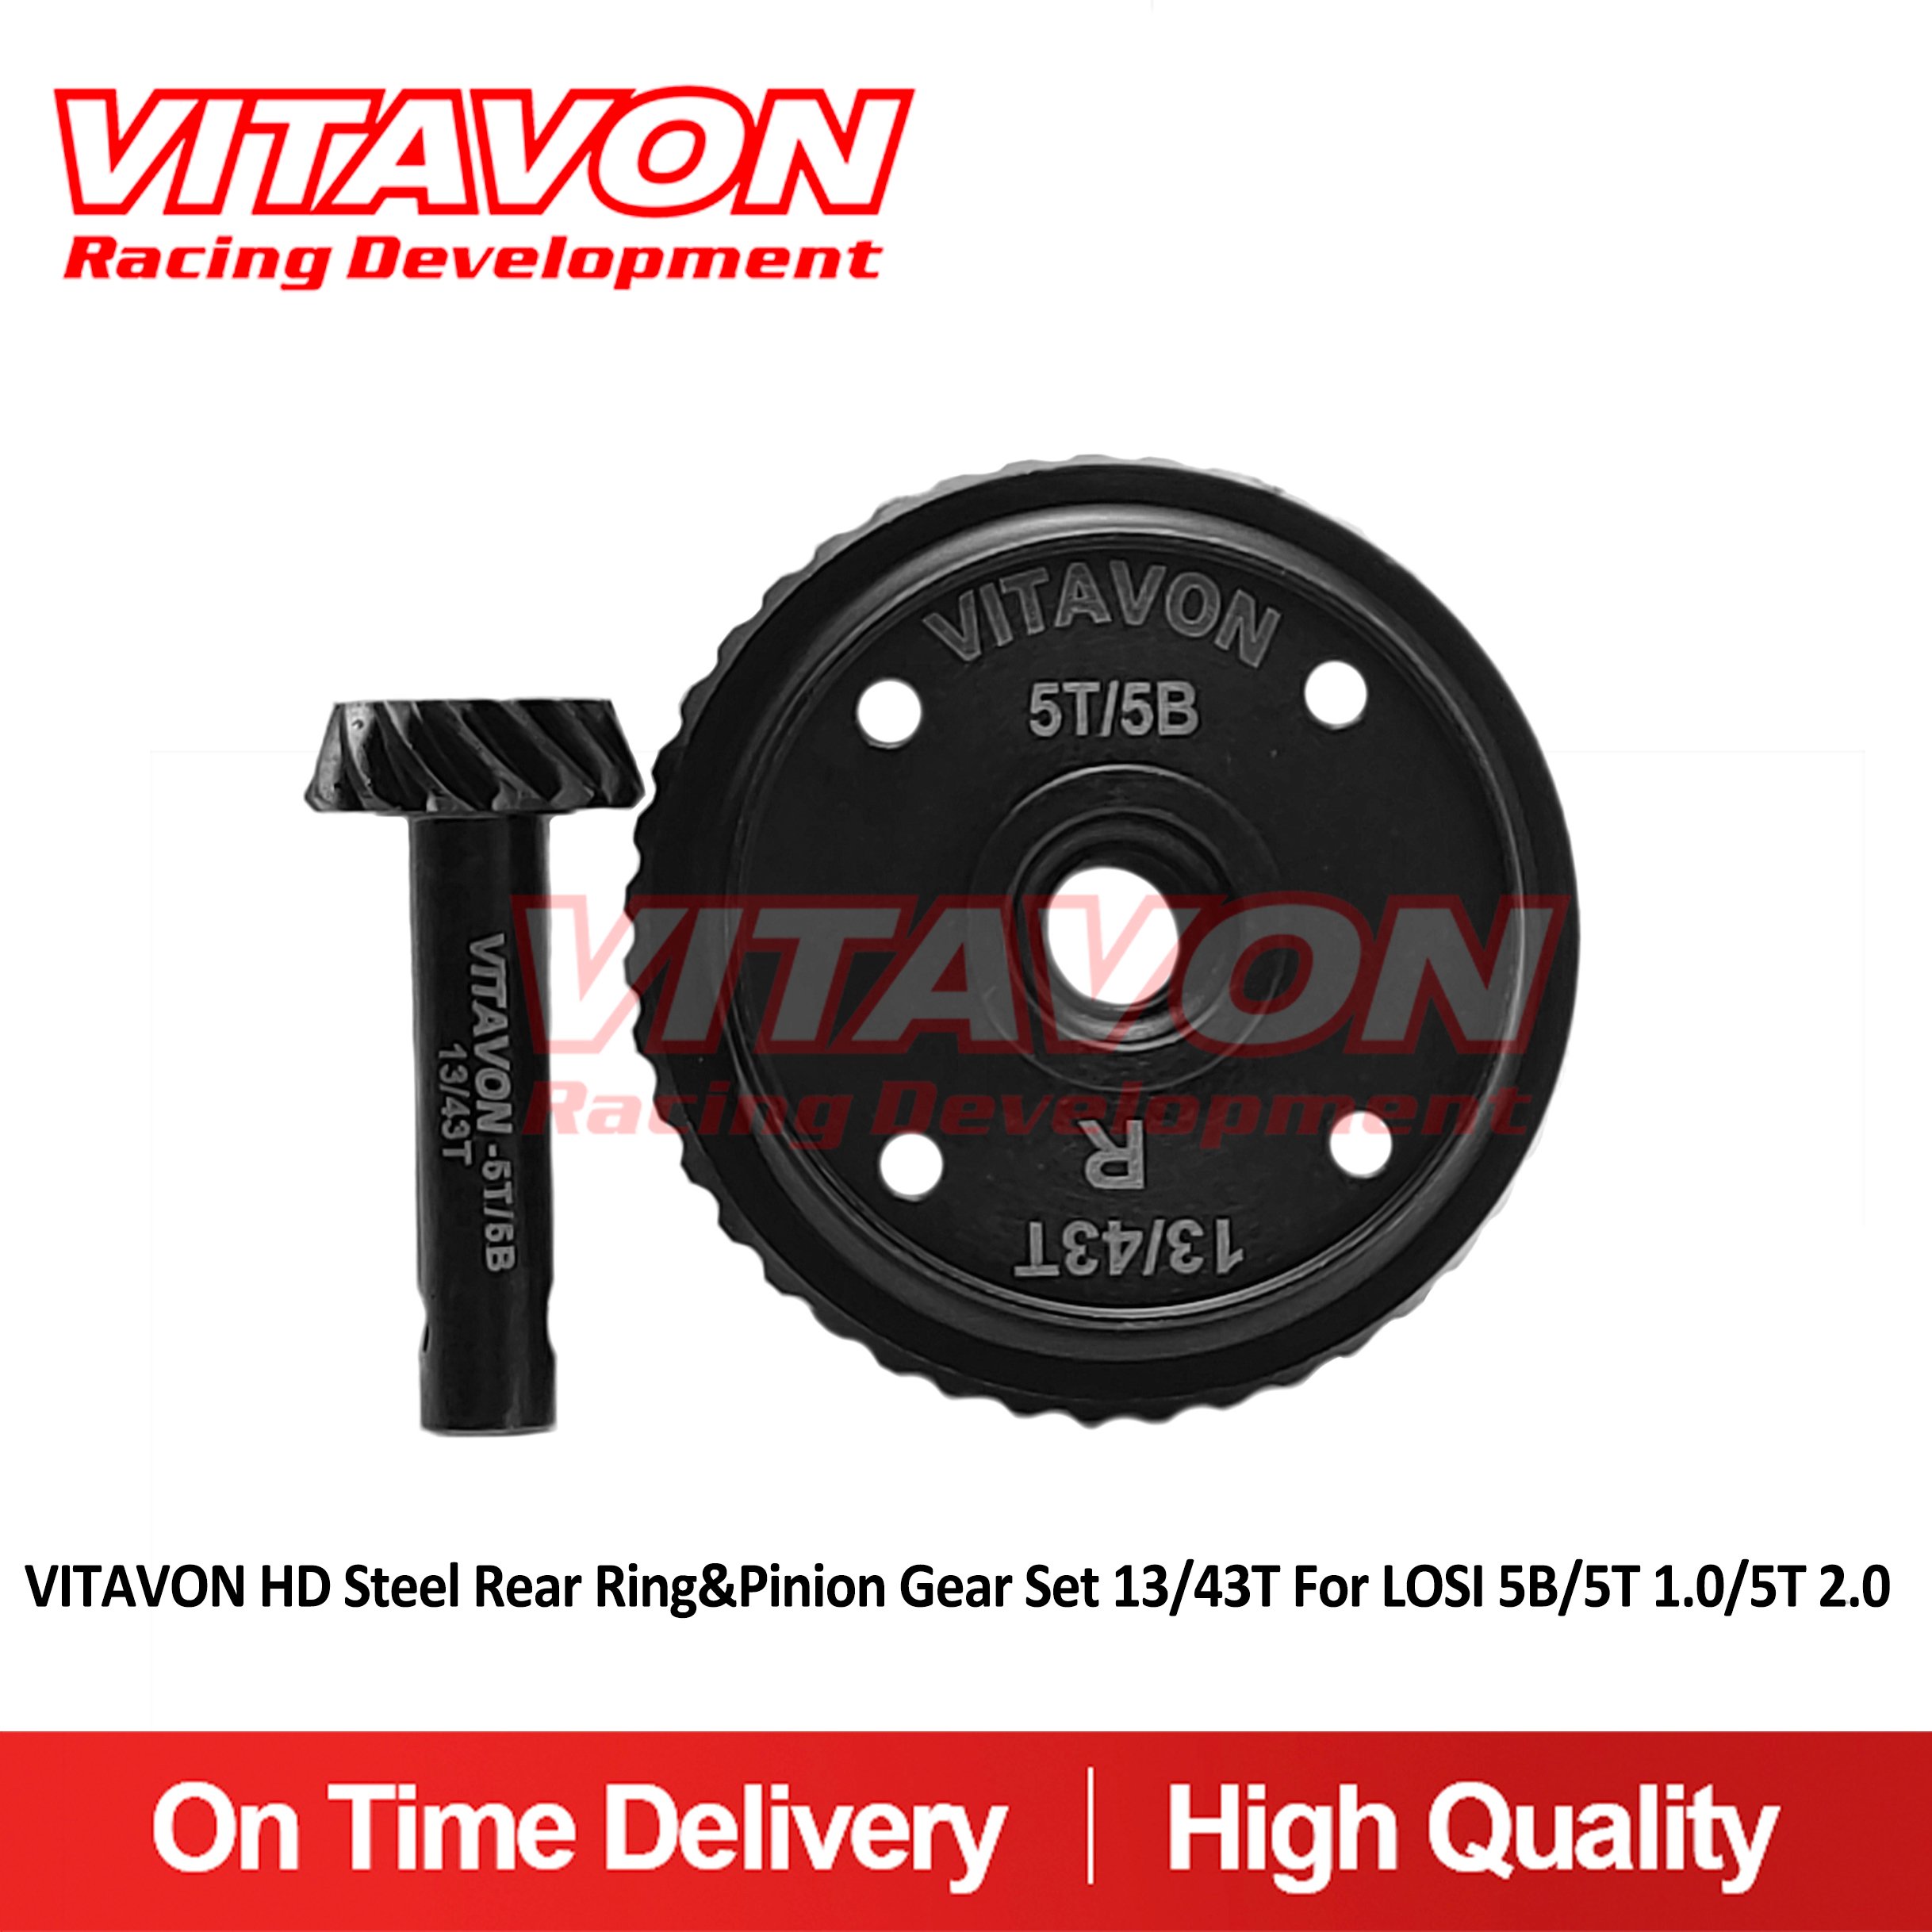 VITAVON HD Steel Rear Ring&Pinion Gear Set 13/43T For LOSI 5B/5T 1.0/5T 2.0